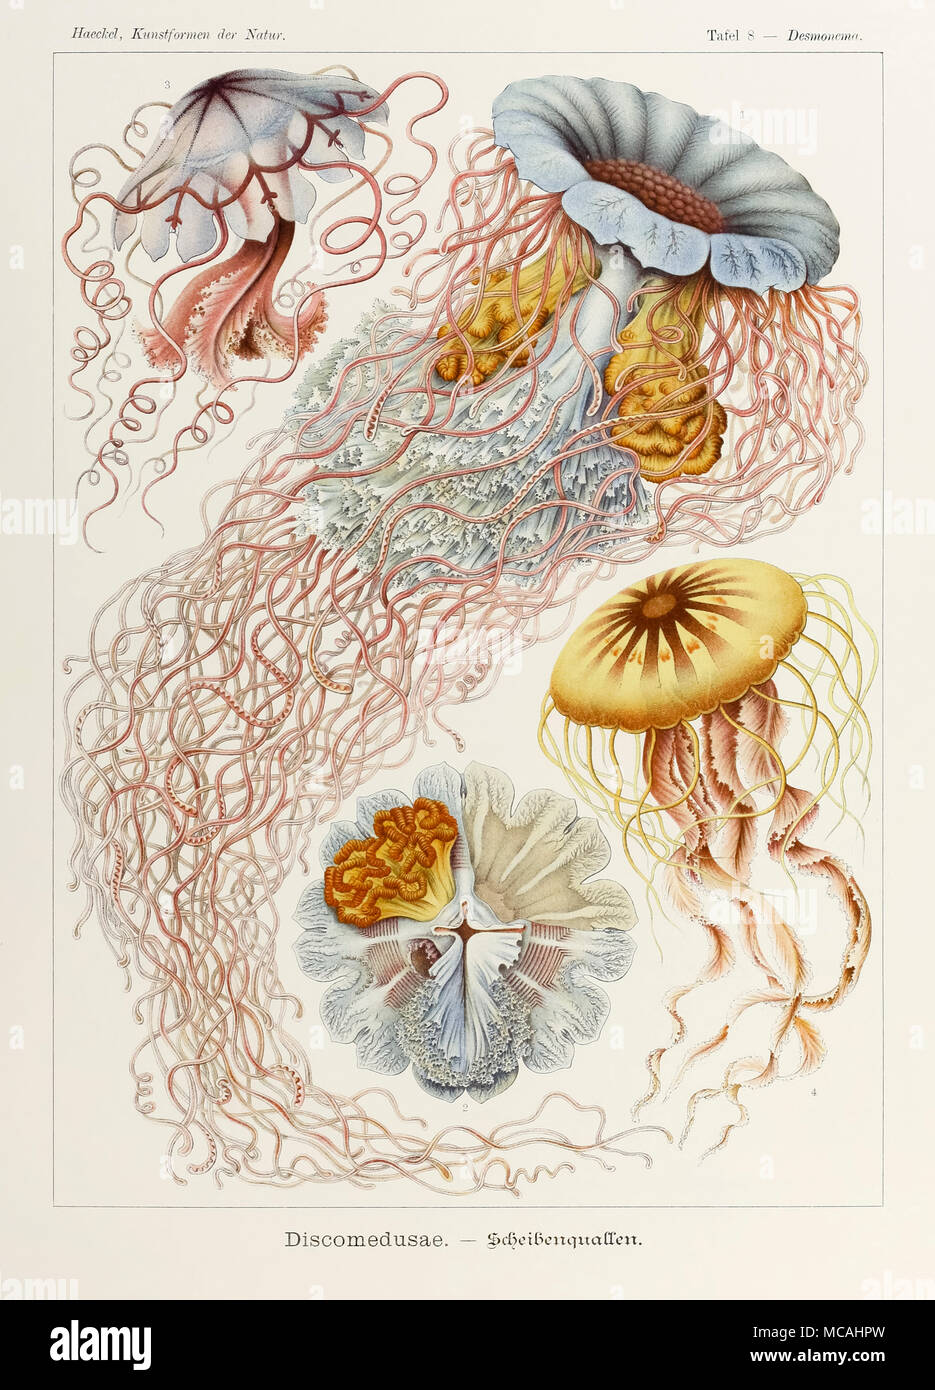 La piastra 8 Desmonema Discomedusae da 'Kunstformen der Natur" (forme d'Arte nella Natura) illustrato da Ernst Haeckel (1834-1919). Vedere ulteriori informazioni qui di seguito. Foto Stock